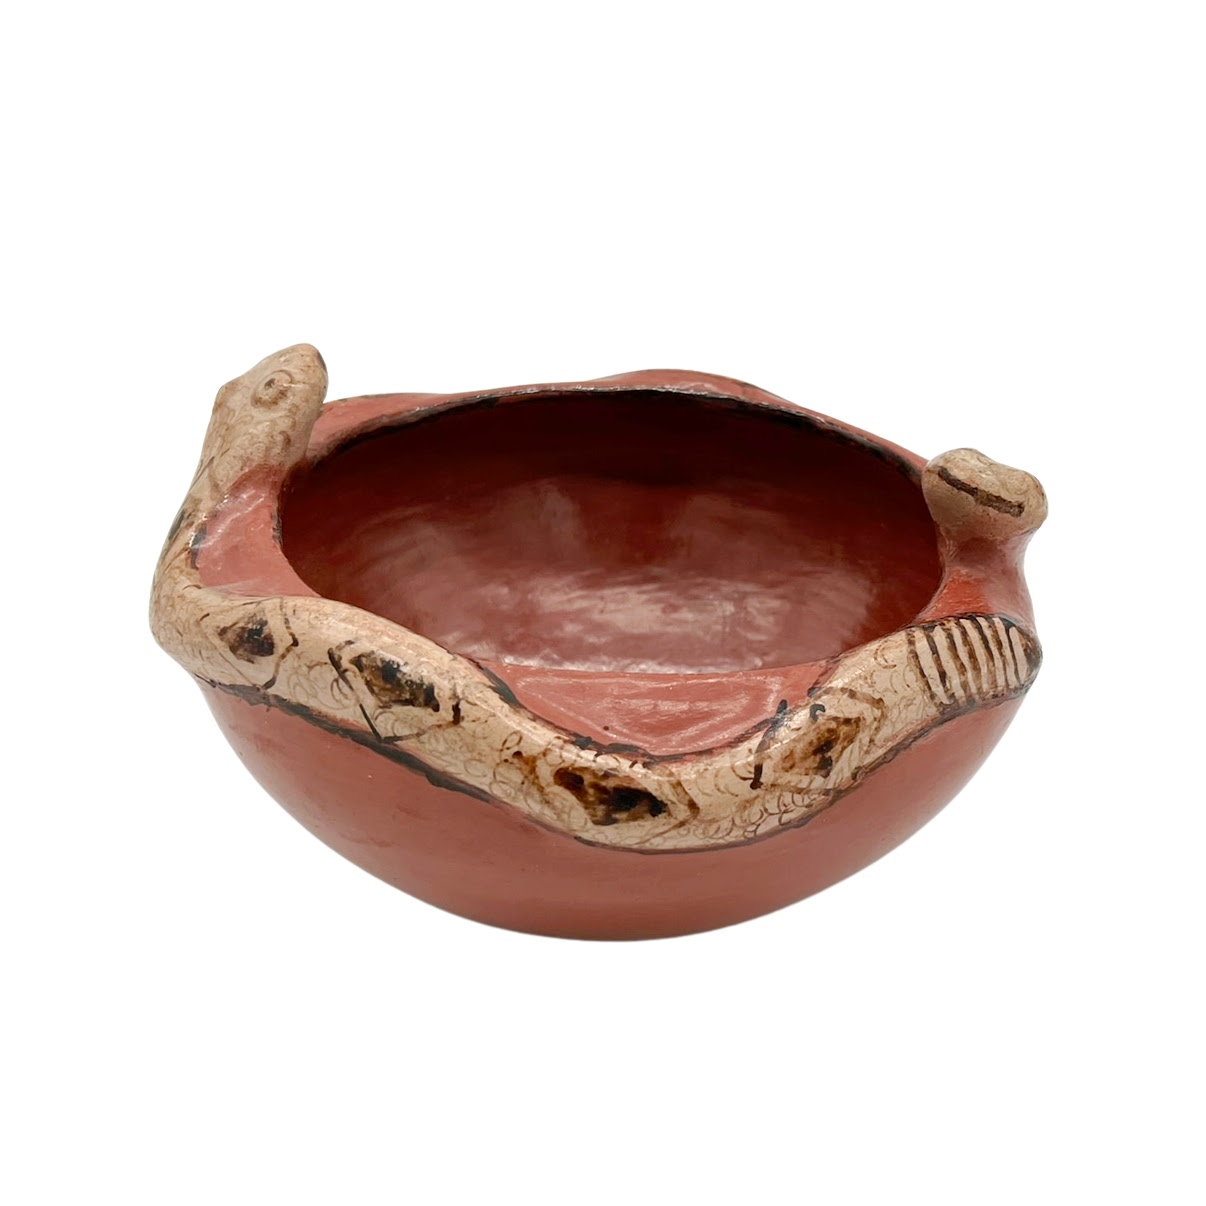 Maricopa Polychrome Rattlesnake Pottery Bowl by Mabel Sunn (1898-1980)